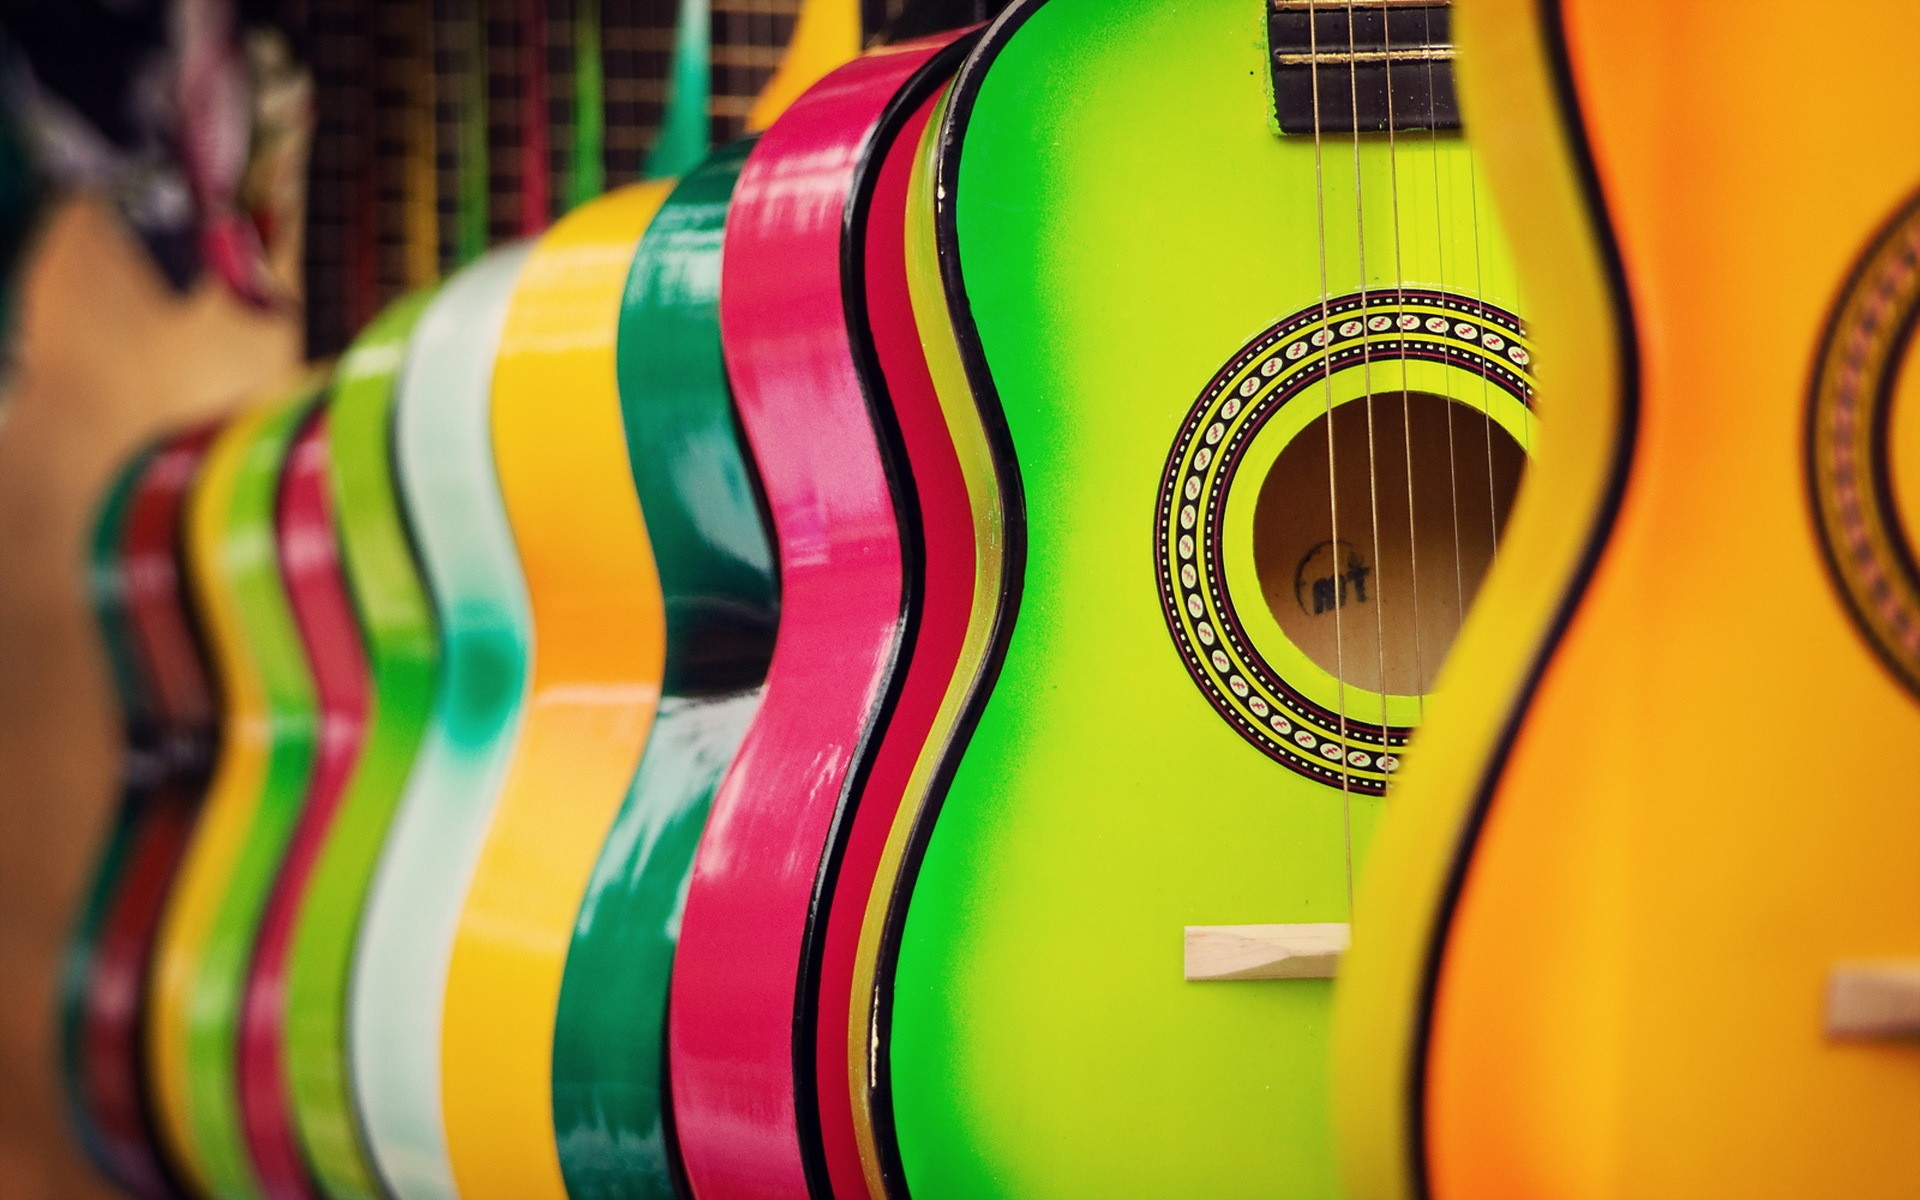 Картинка с цветными гитарами